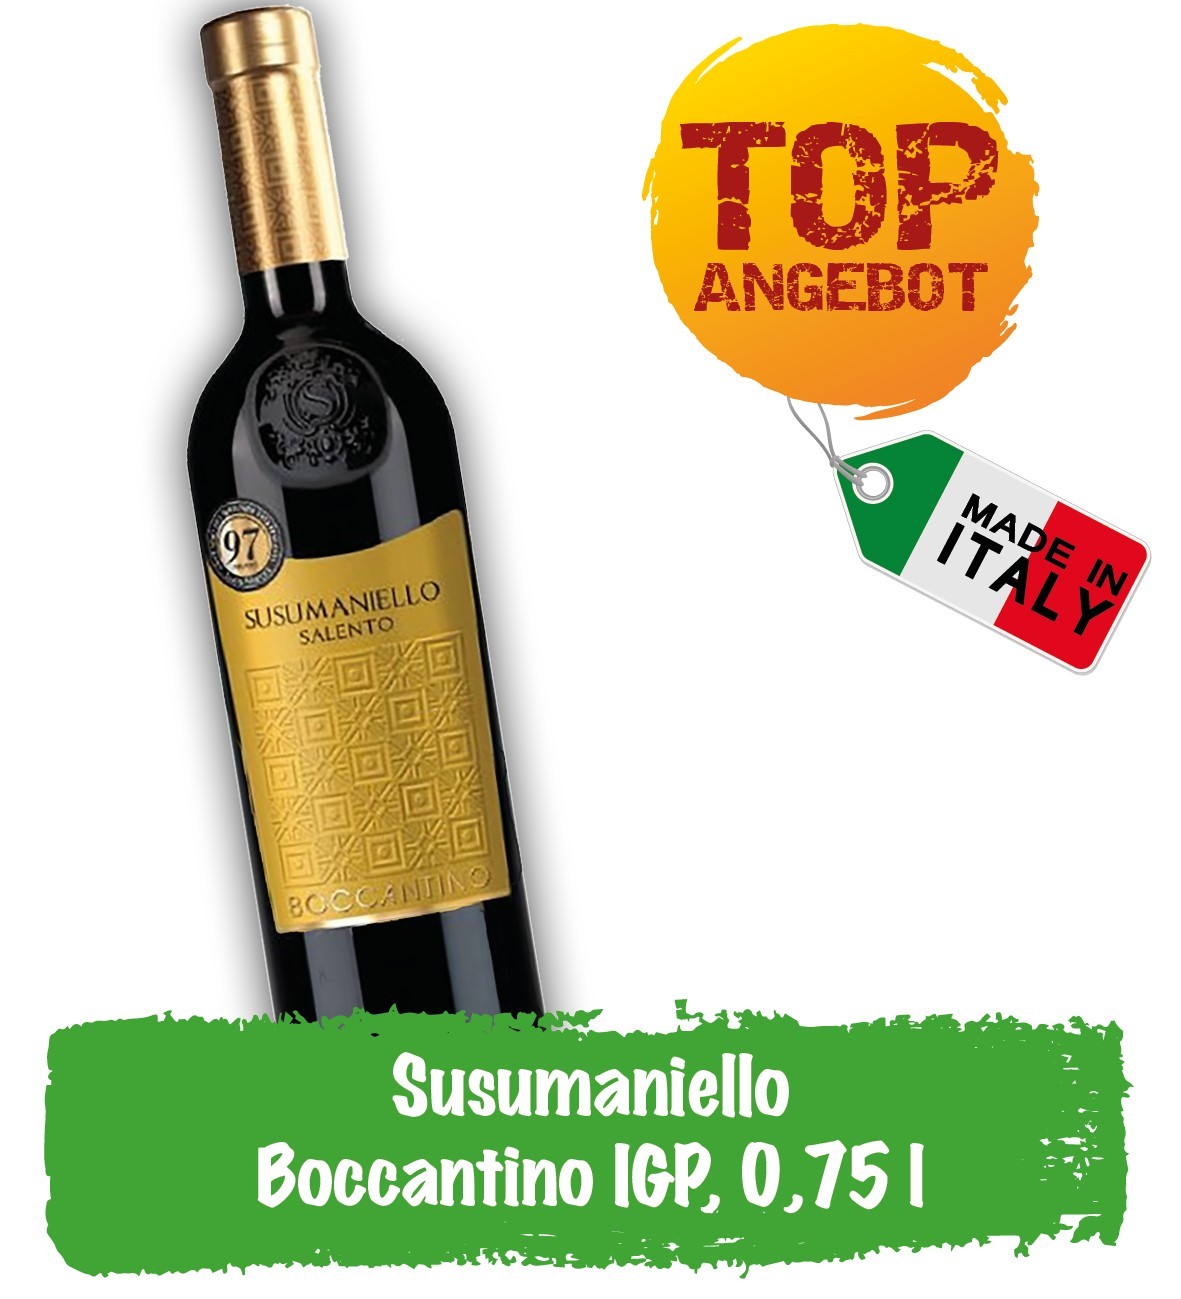 Top_Susumaniello_Boccantino